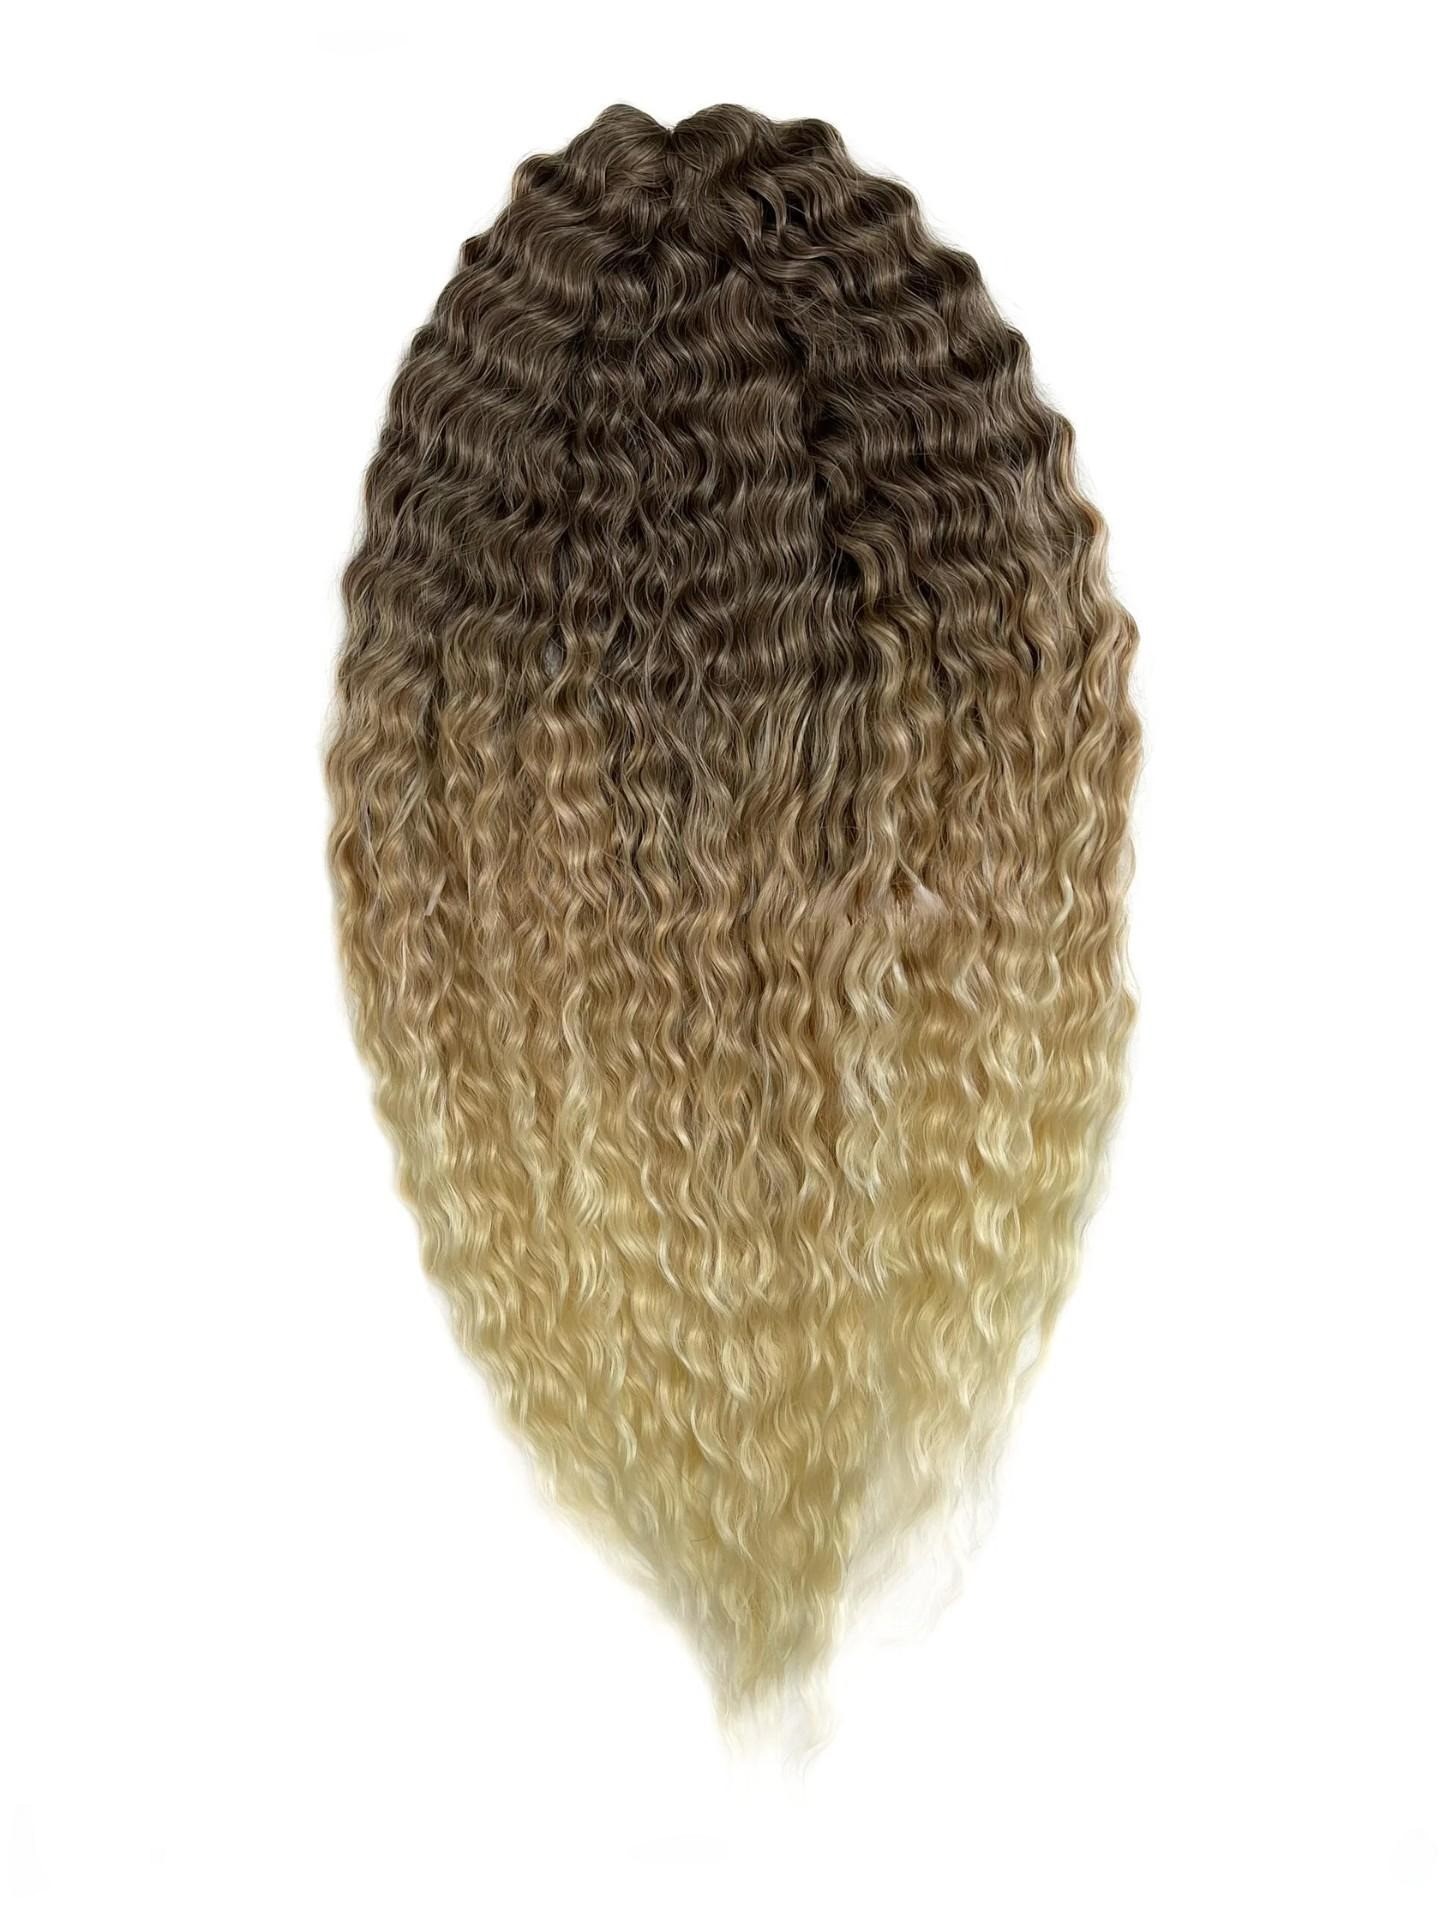 Афрокудри для плетения волос Ariel цвет 102 светло каштановый длина 55см вес 300г афрокудри для плетения волос ariel ариэль blue 7 длина 66см вес 300г